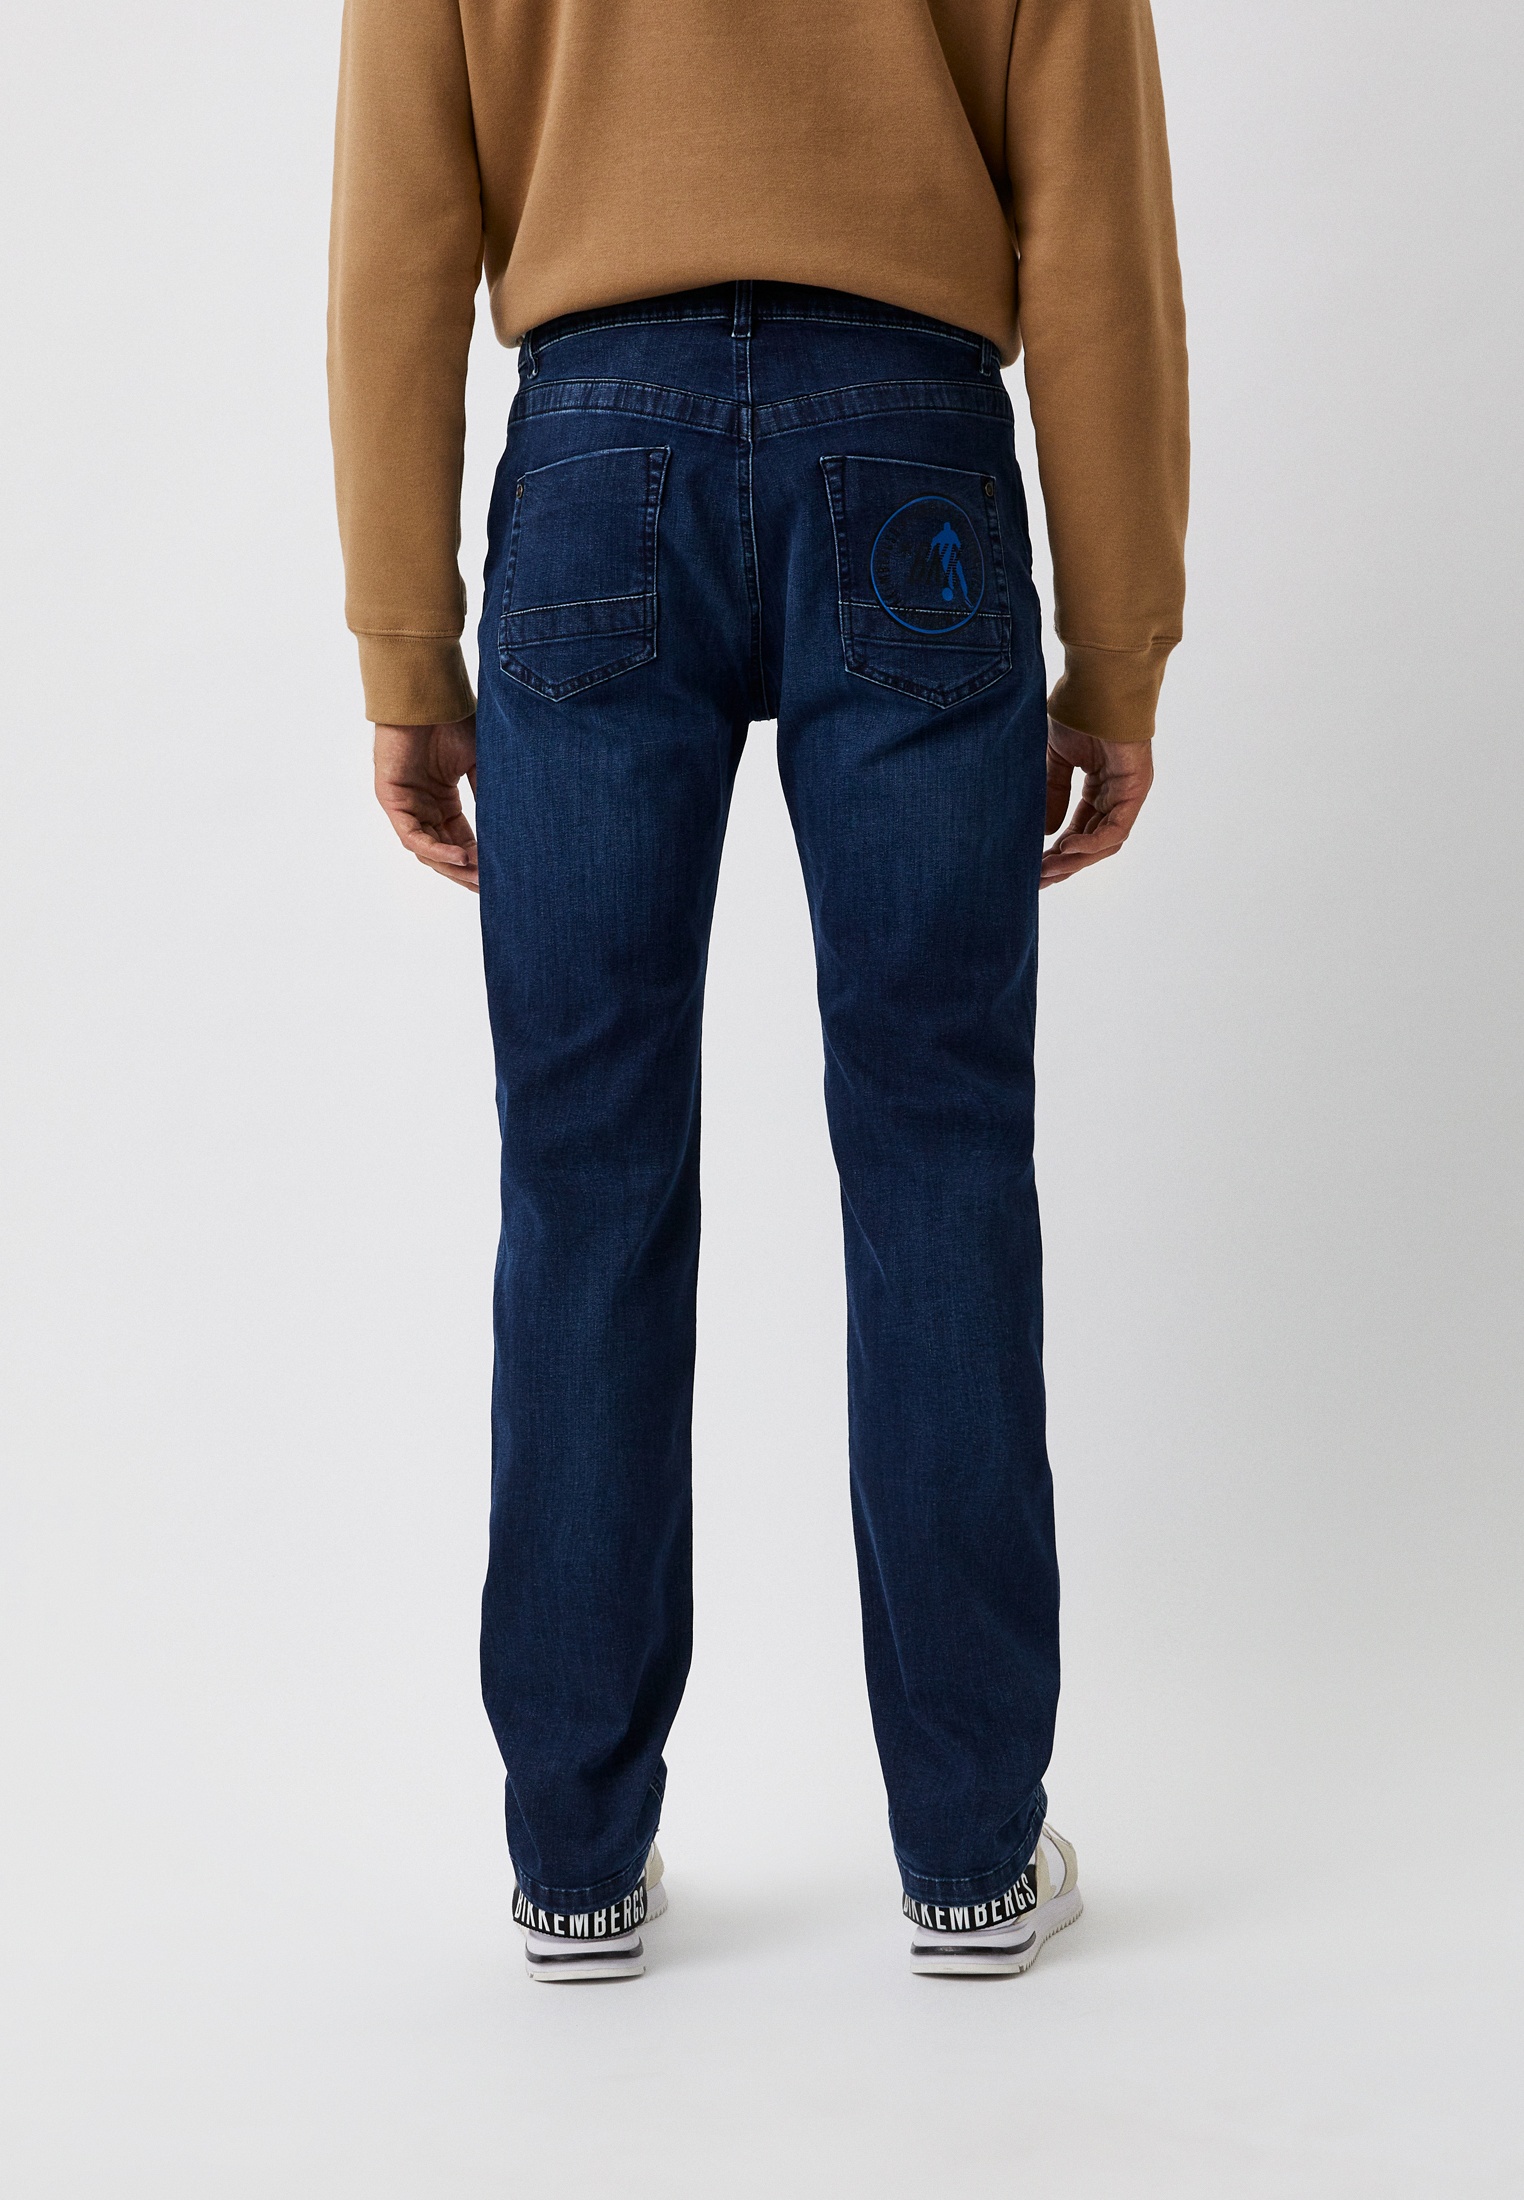 Мужские прямые джинсы Bikkembergs (Биккембергс) C Q 113 01 S 3511: изображение 7